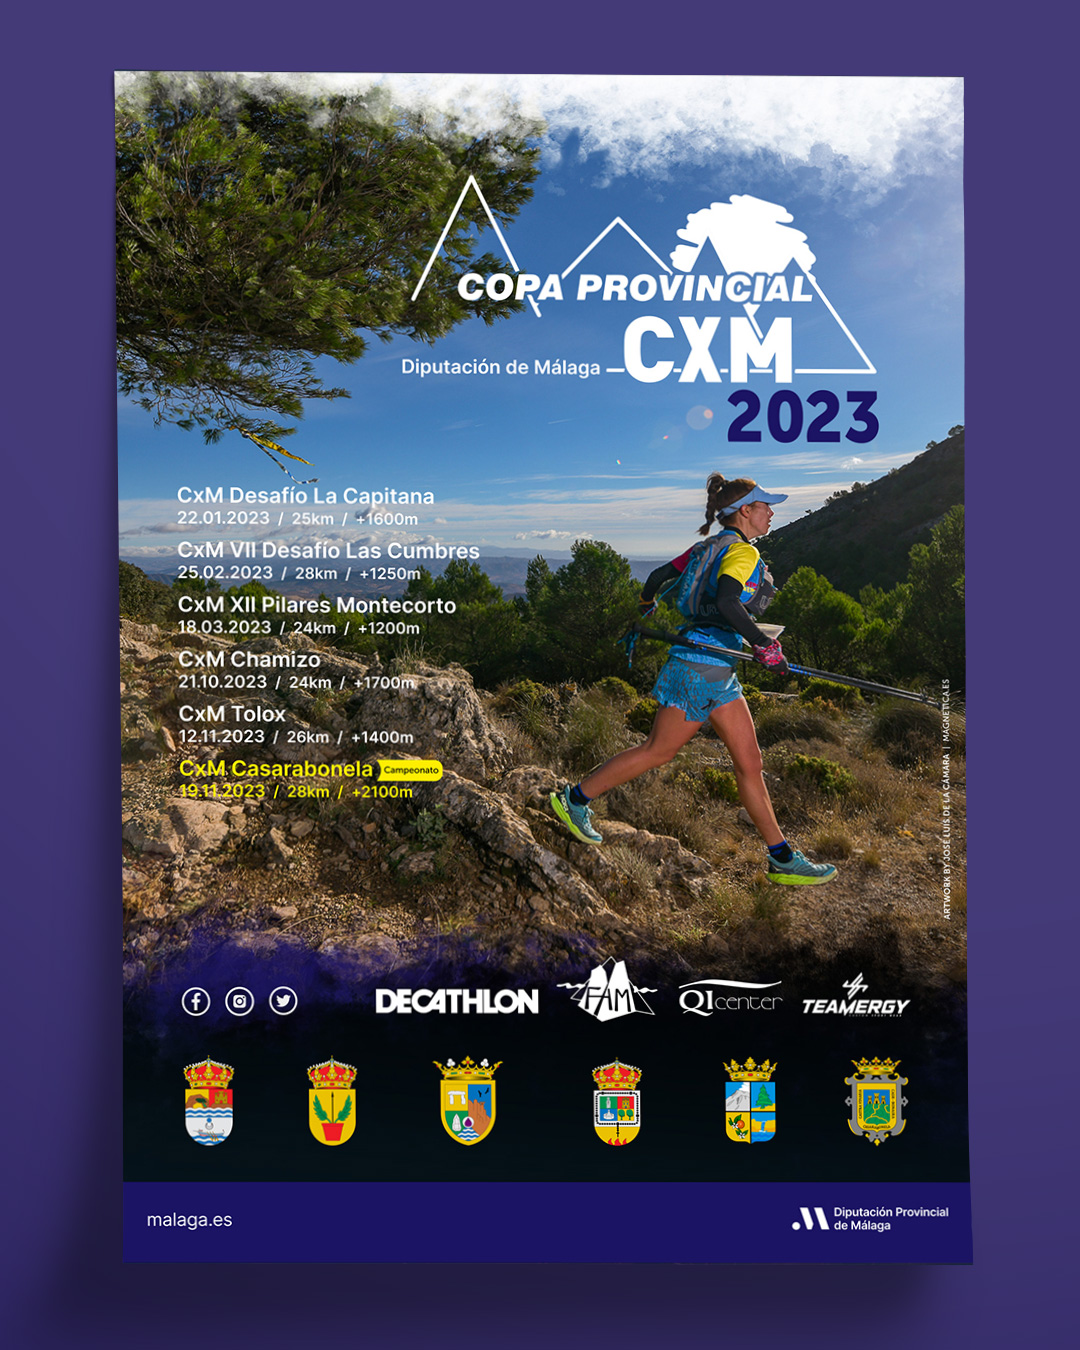 Diseño de cartel para la Copa Provincial CxM de Málaga 2023